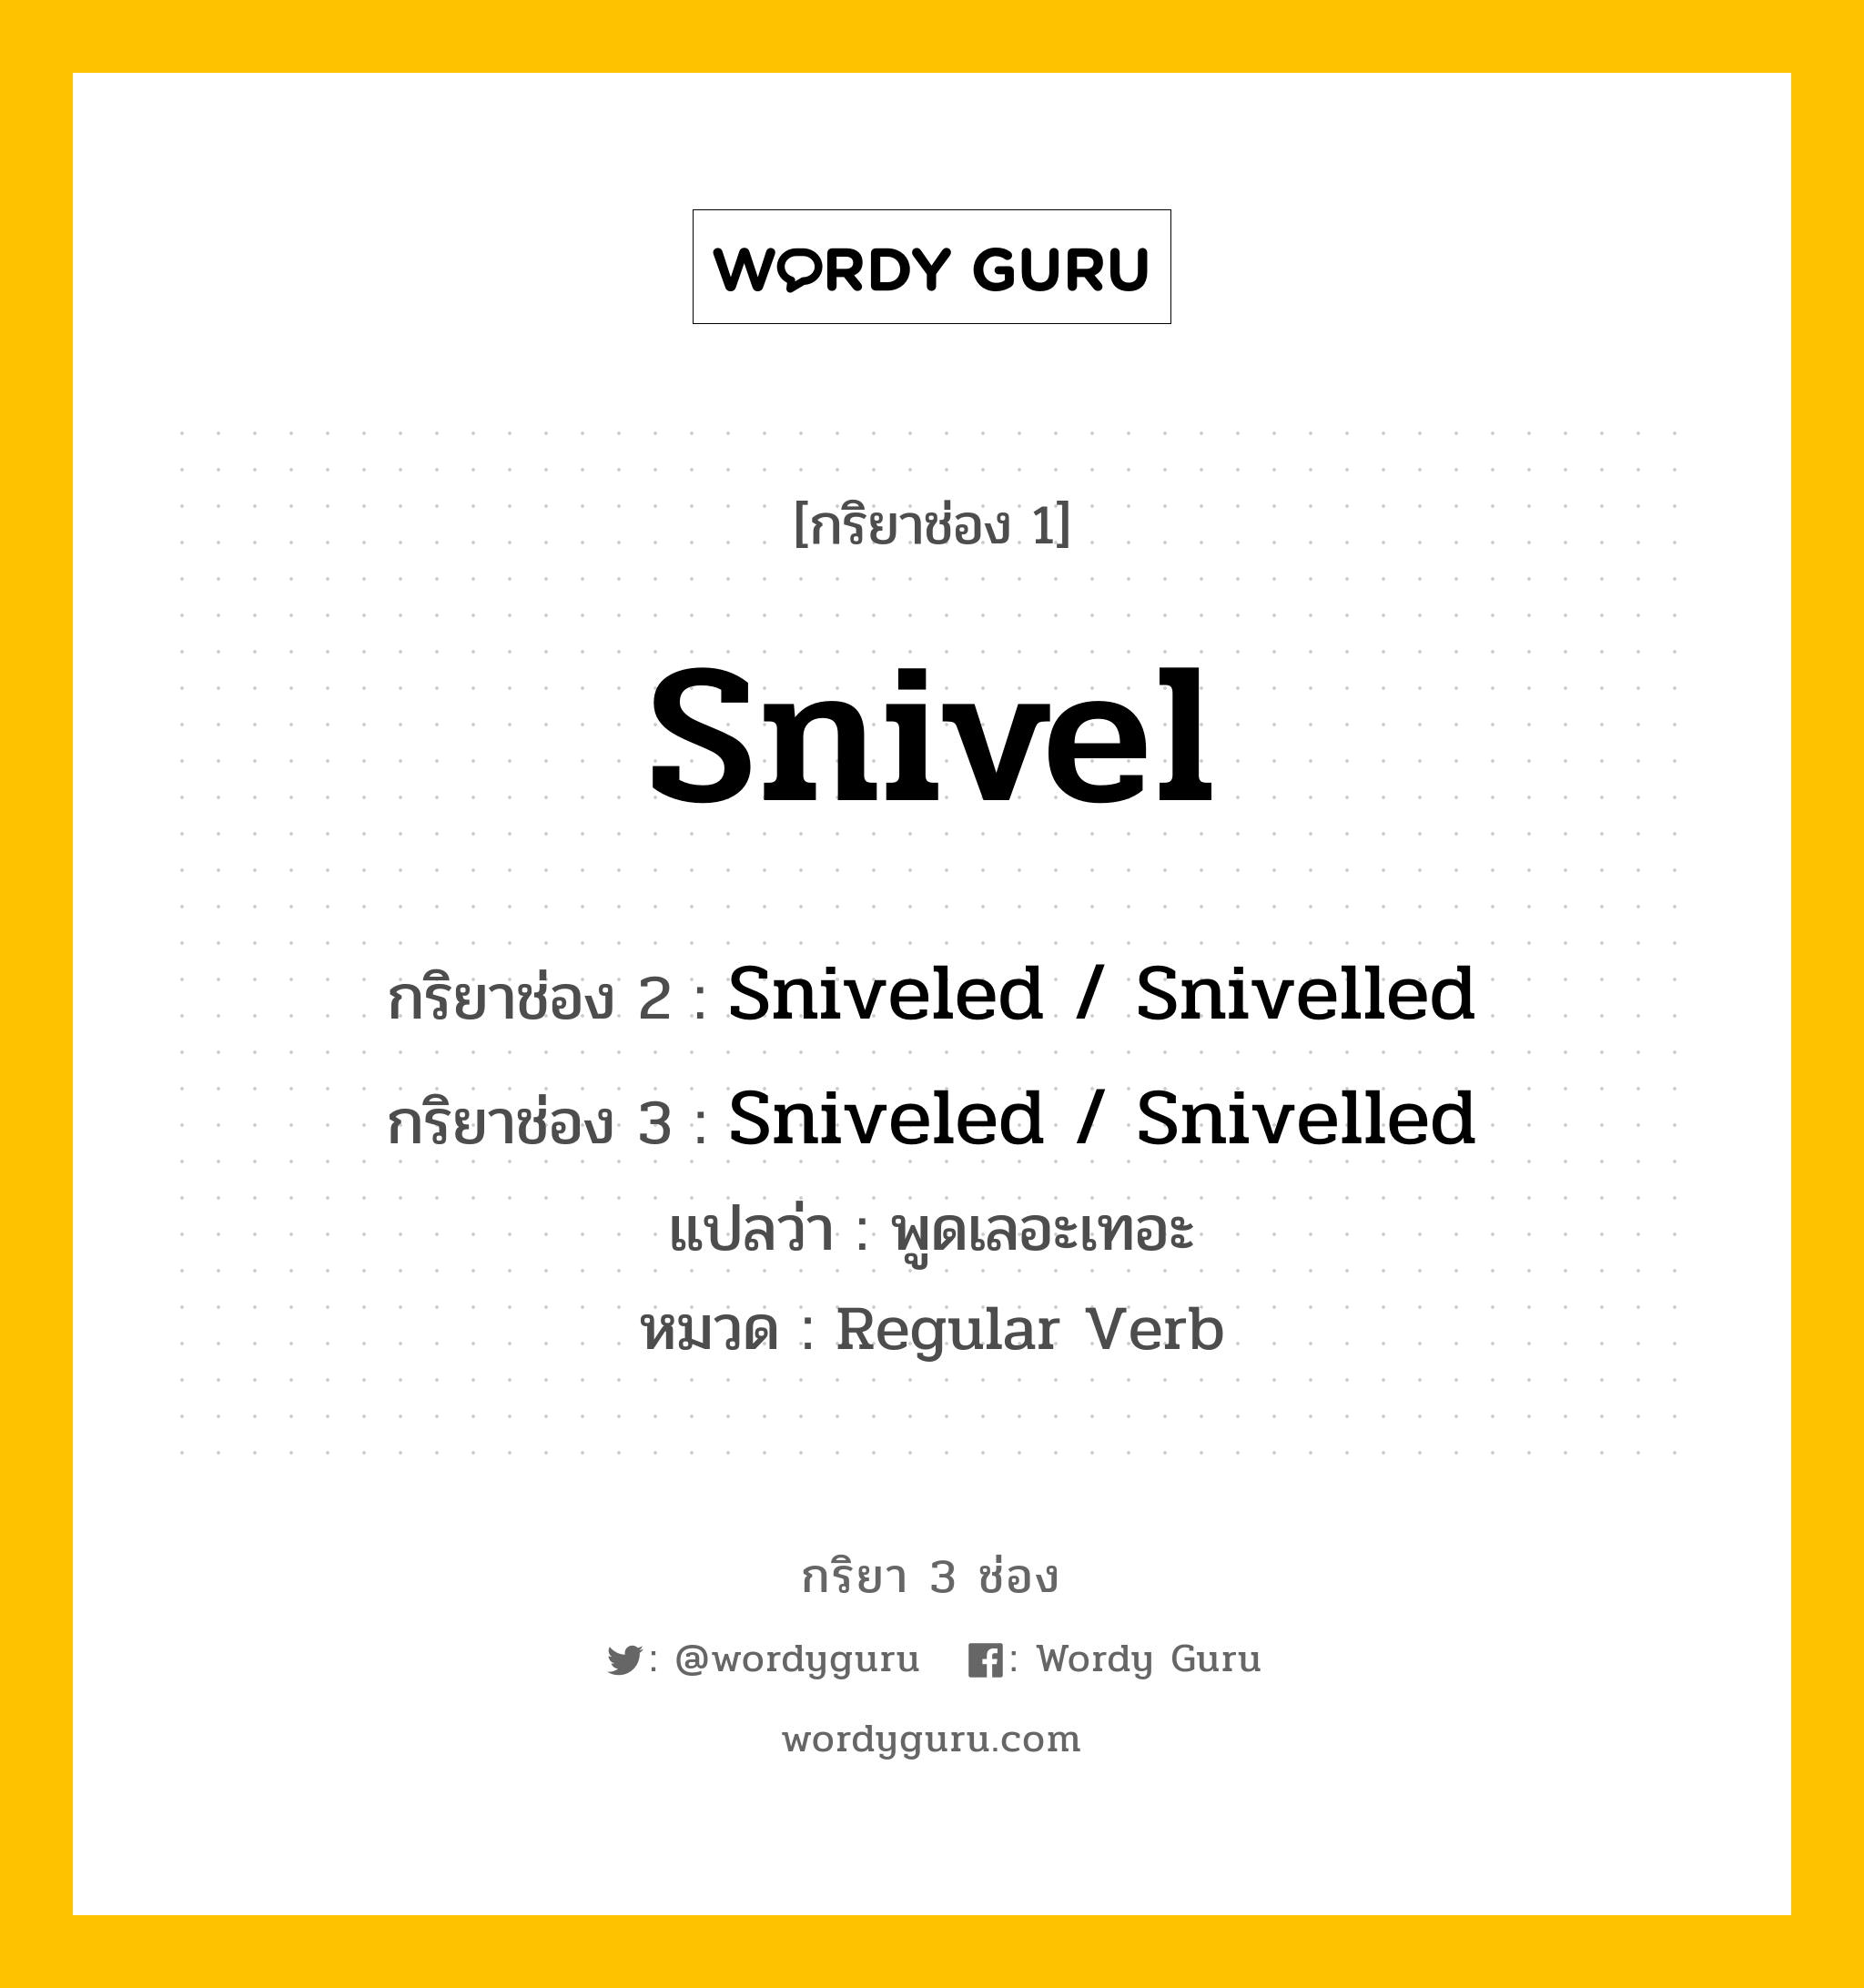 กริยา 3 ช่อง ของ Snivel คืออะไร? มาดูคำอ่าน คำแปลกันเลย, กริยาช่อง 1 Snivel กริยาช่อง 2 Sniveled / Snivelled กริยาช่อง 3 Sniveled / Snivelled แปลว่า พูดเลอะเทอะ หมวด Regular Verb หมวด Regular Verb